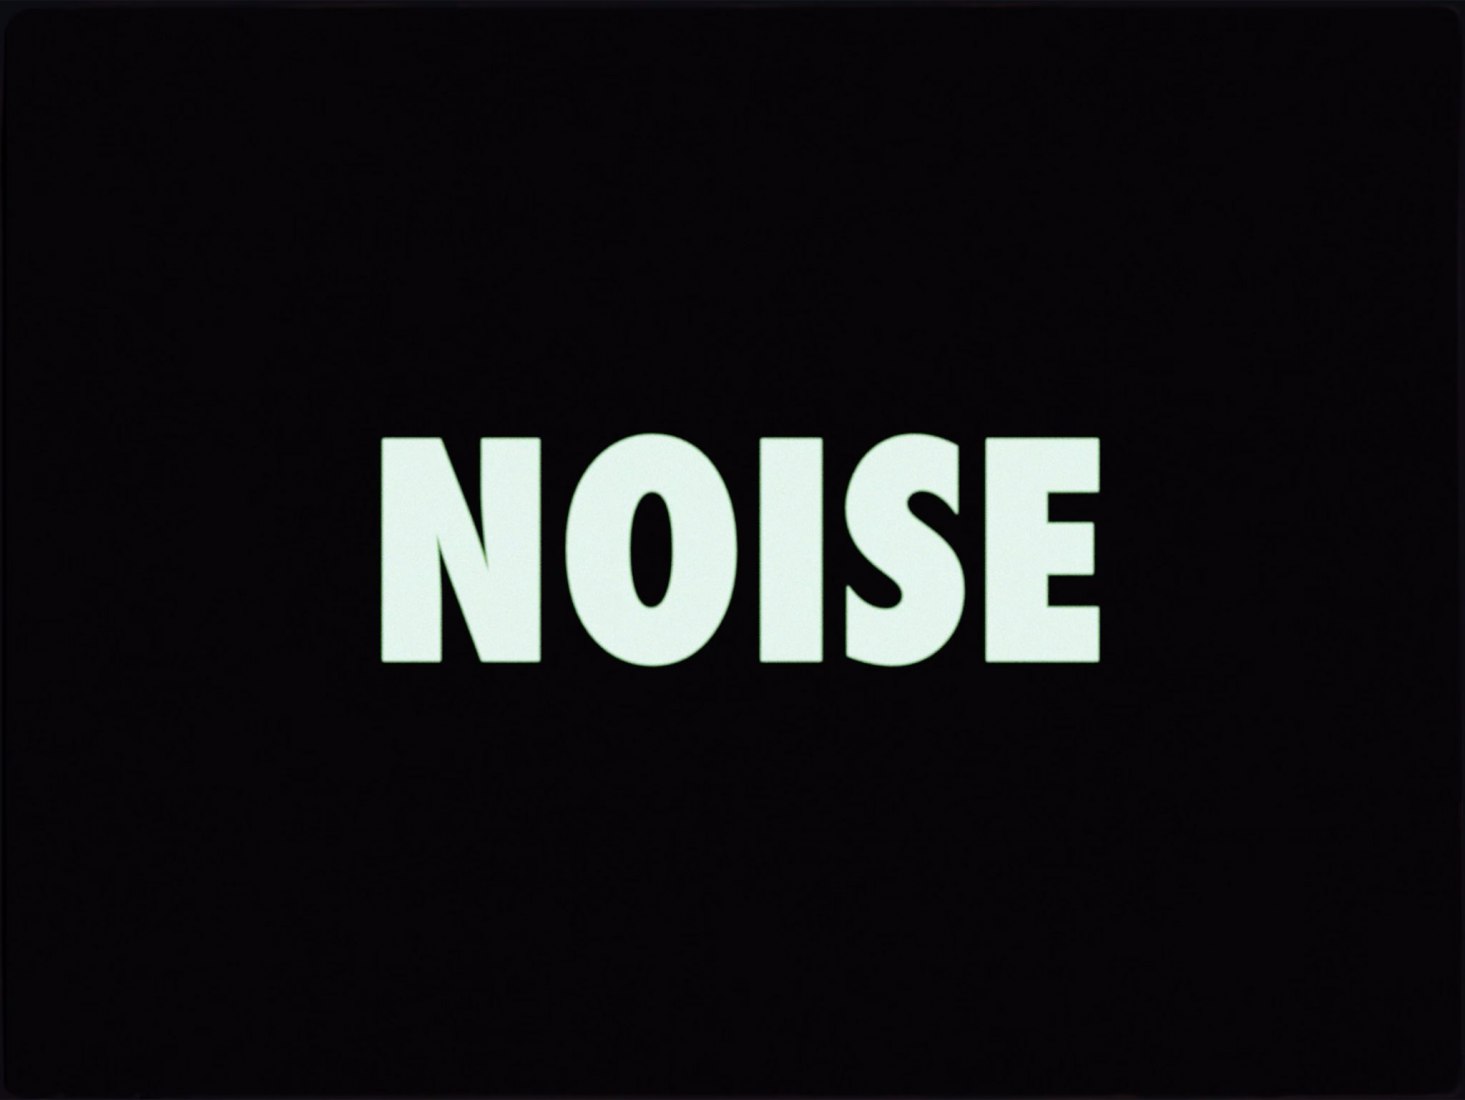 Noise by Zsela